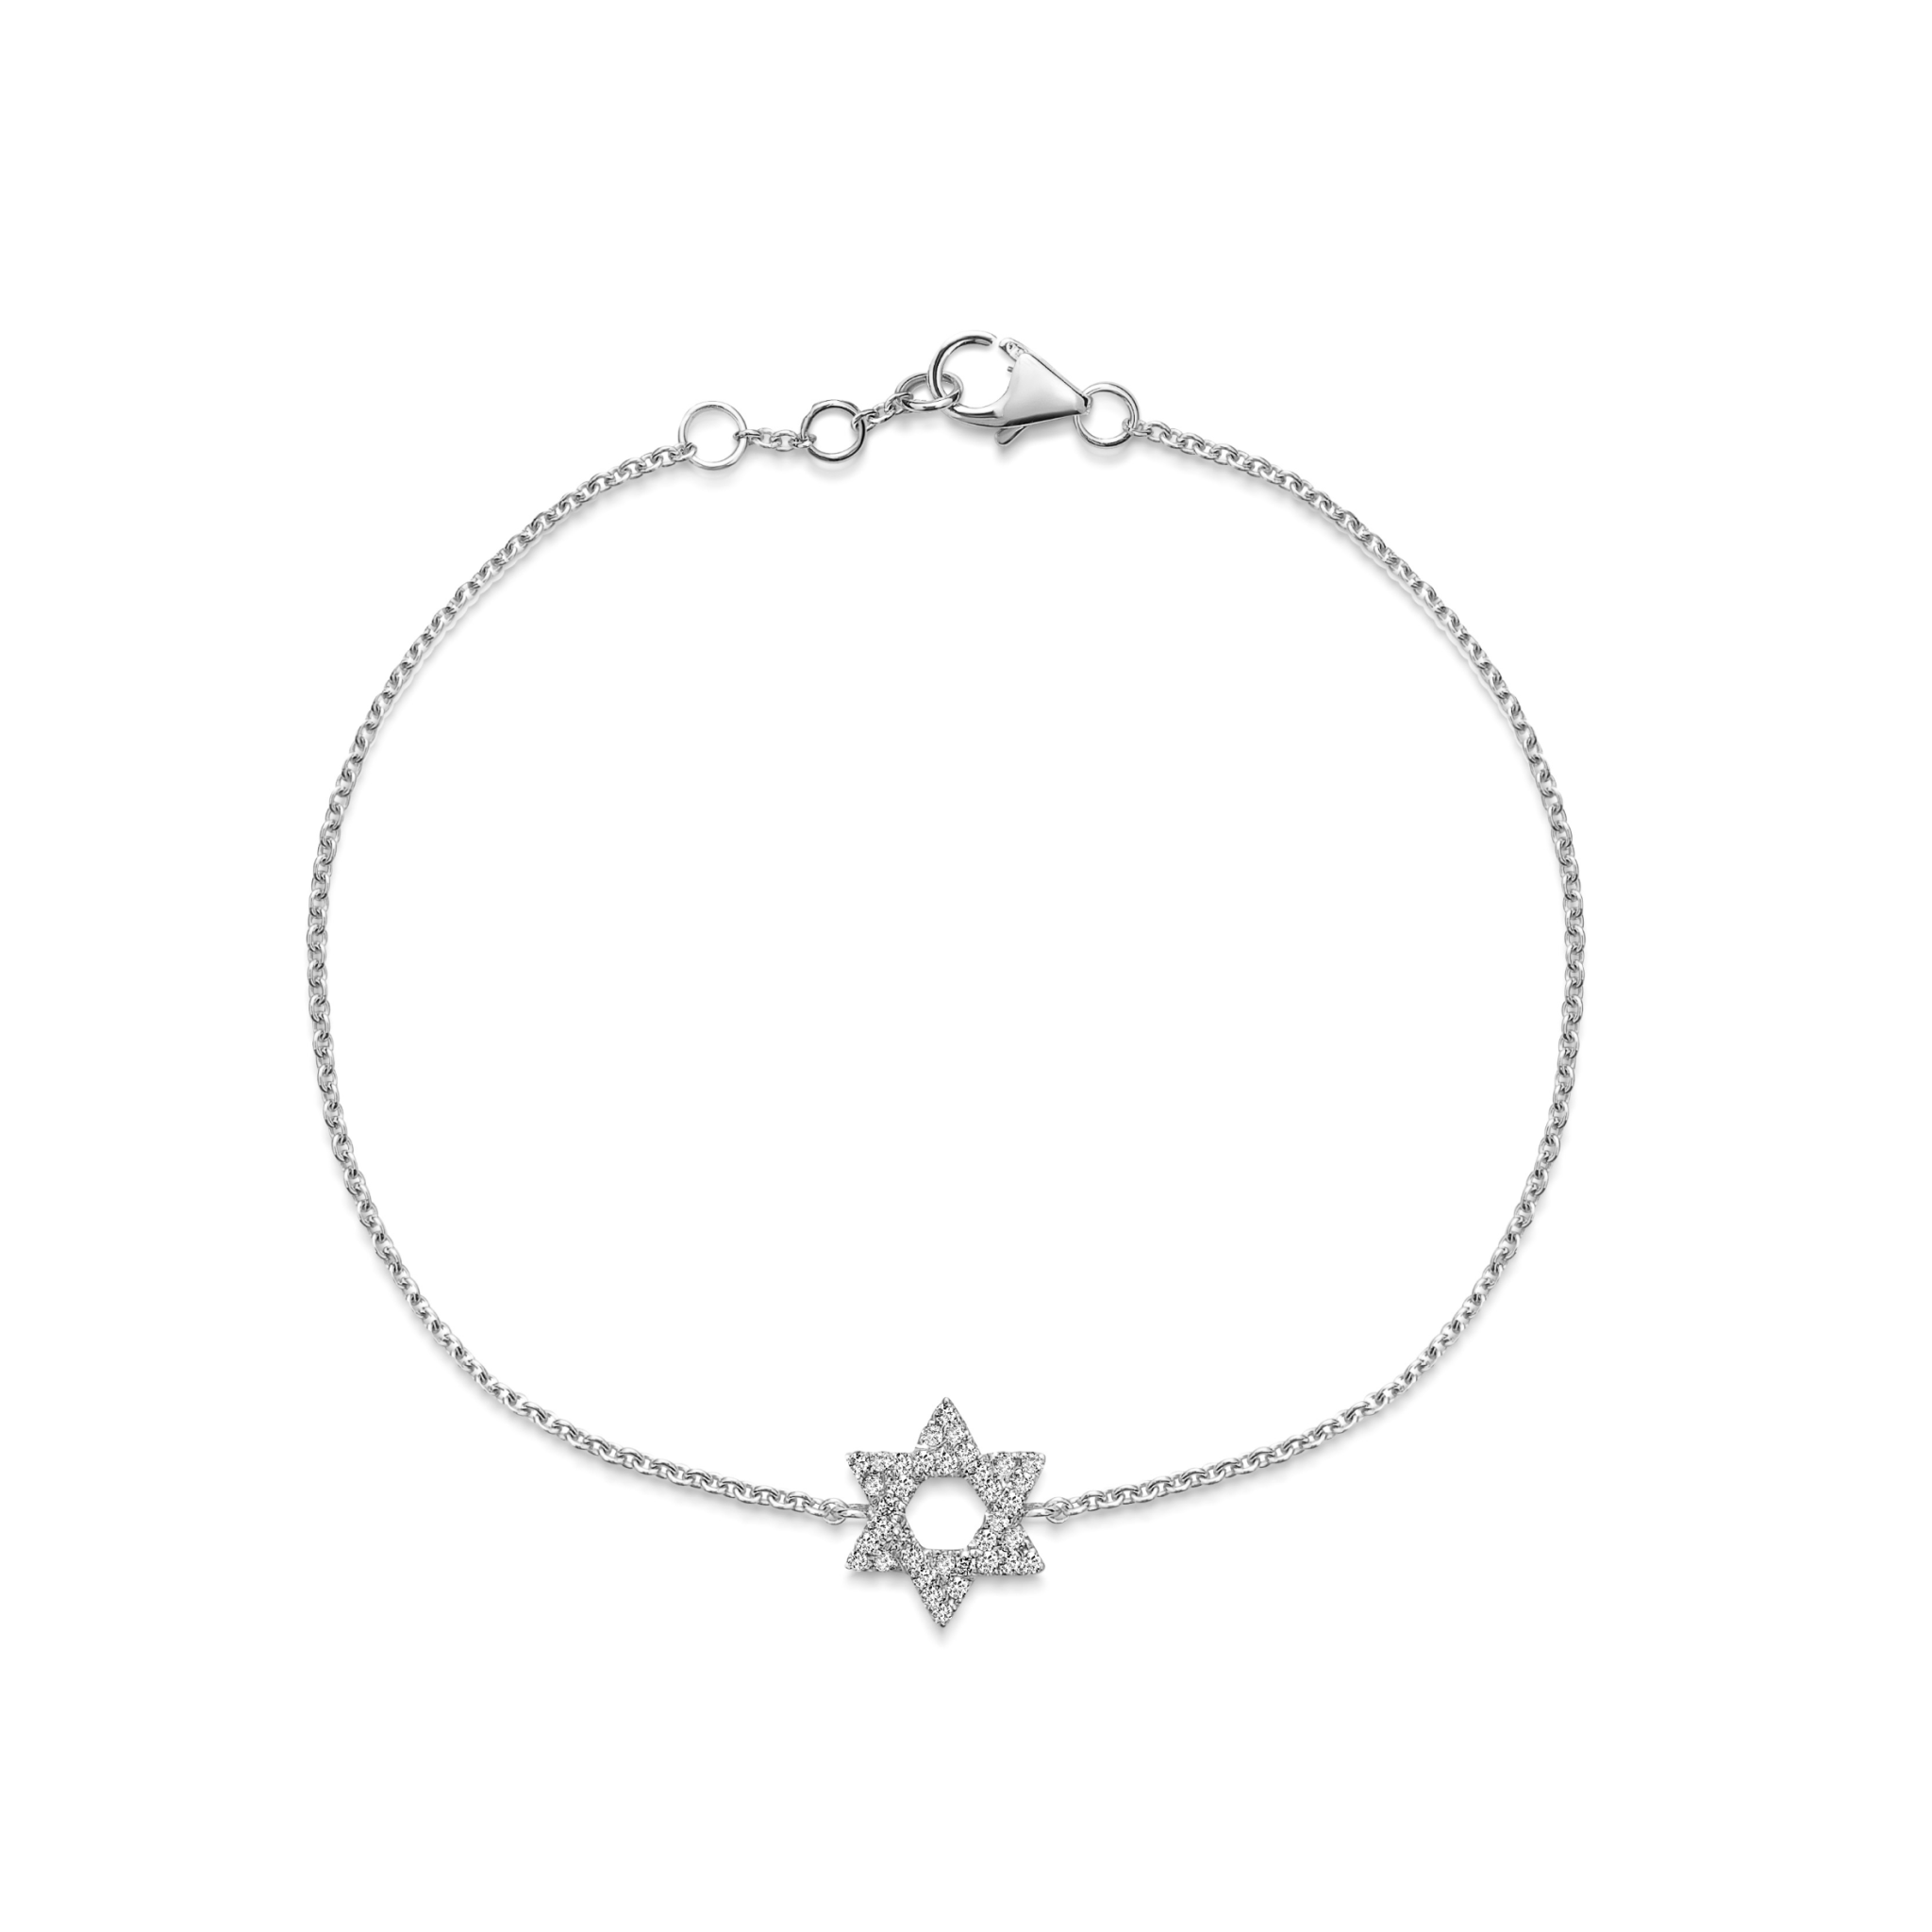 STAR OF DAVID bracelet